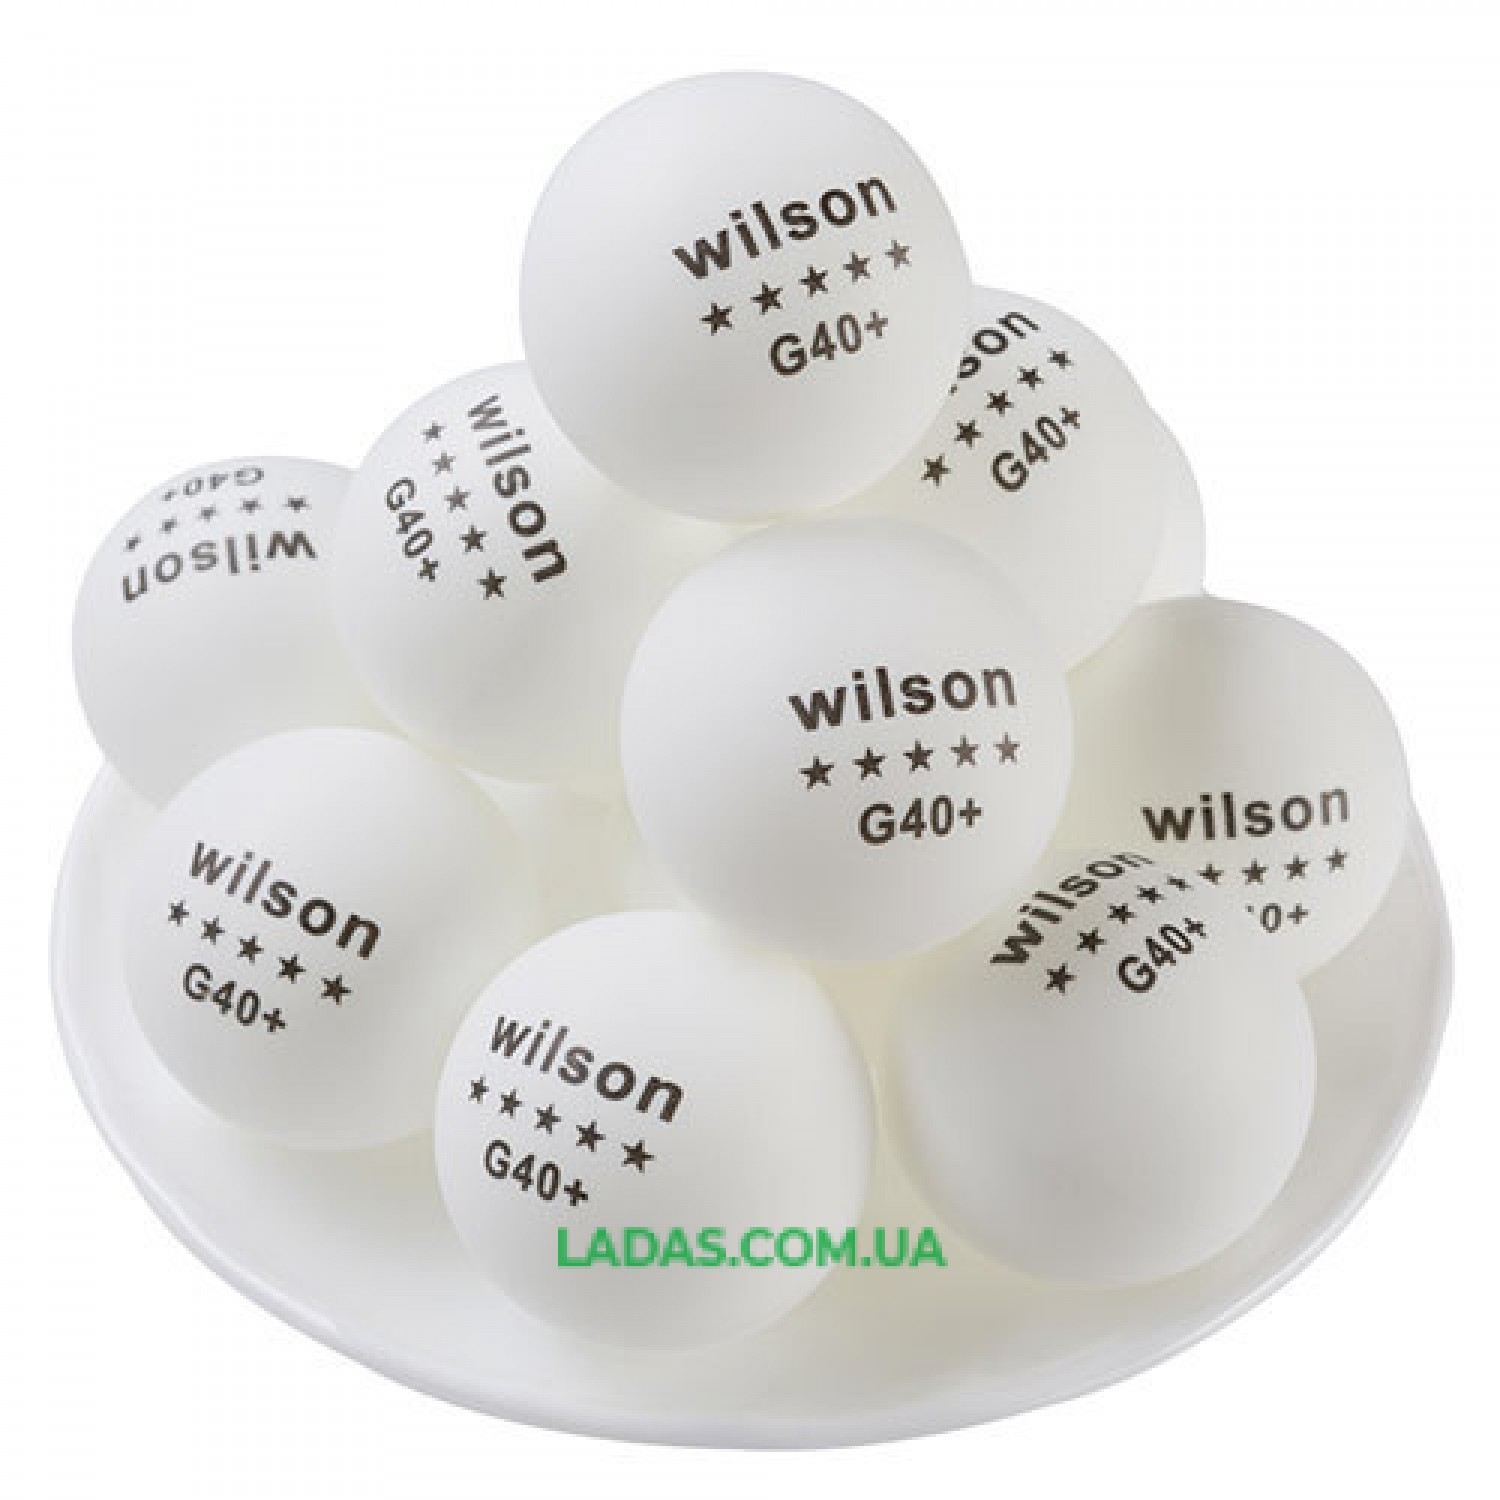 Шарики для настольного тенниса Wilson G40+ белые (144 шт в упаковке)